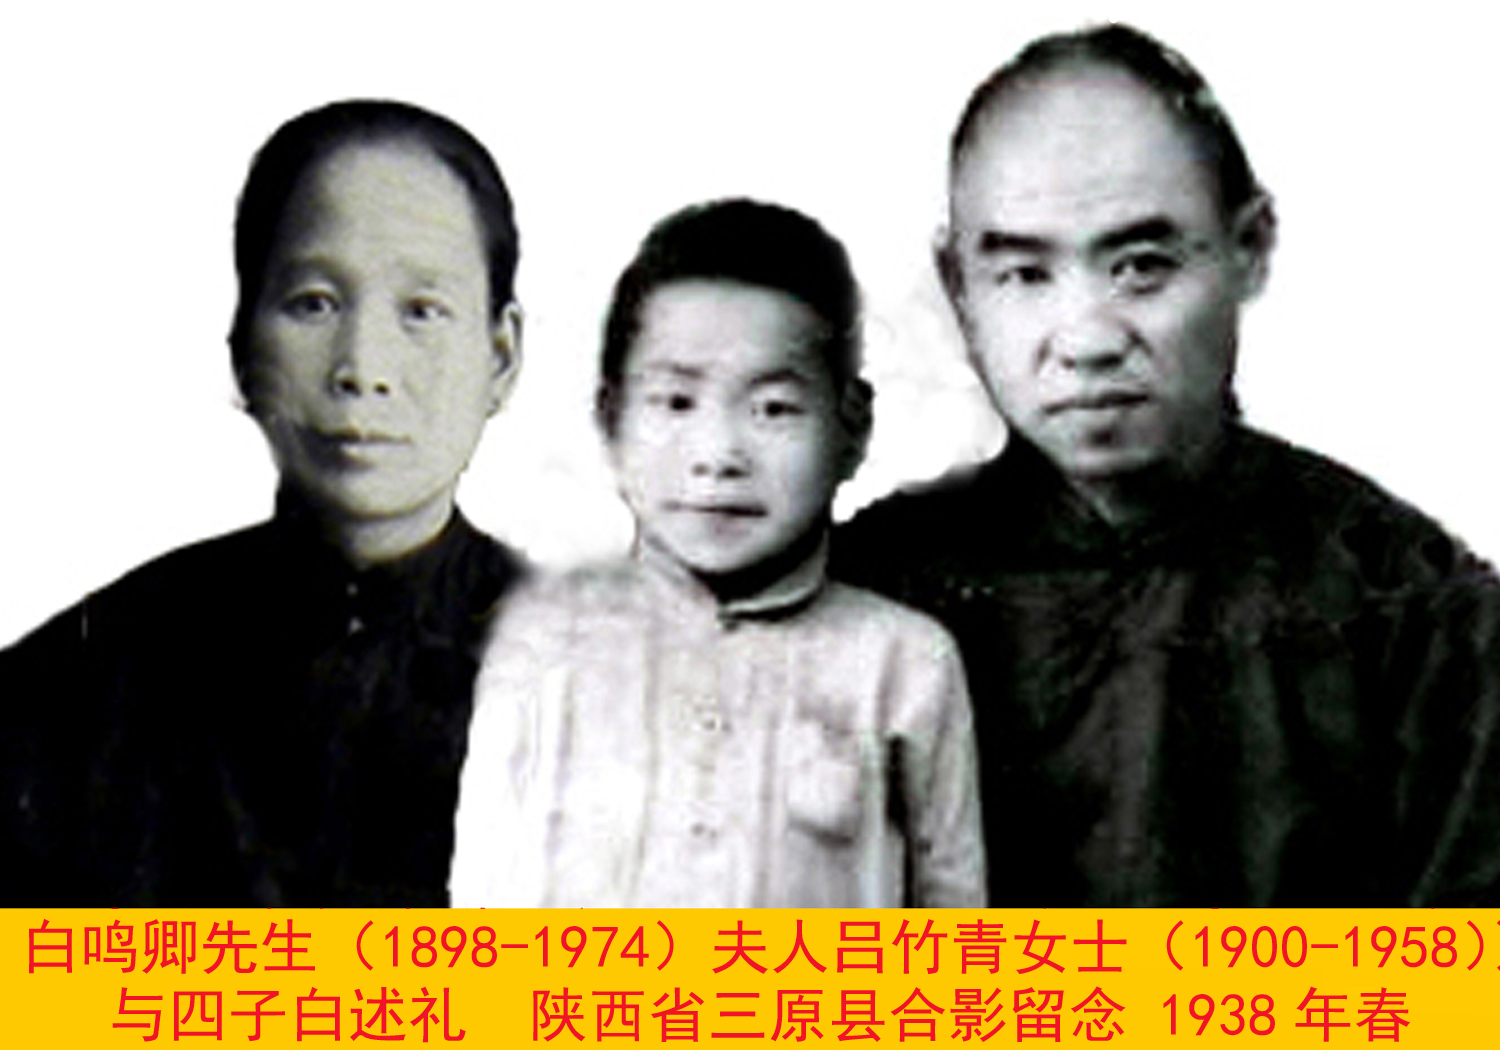 白鳴卿先生夫人呂竹青女士與四子照1938年